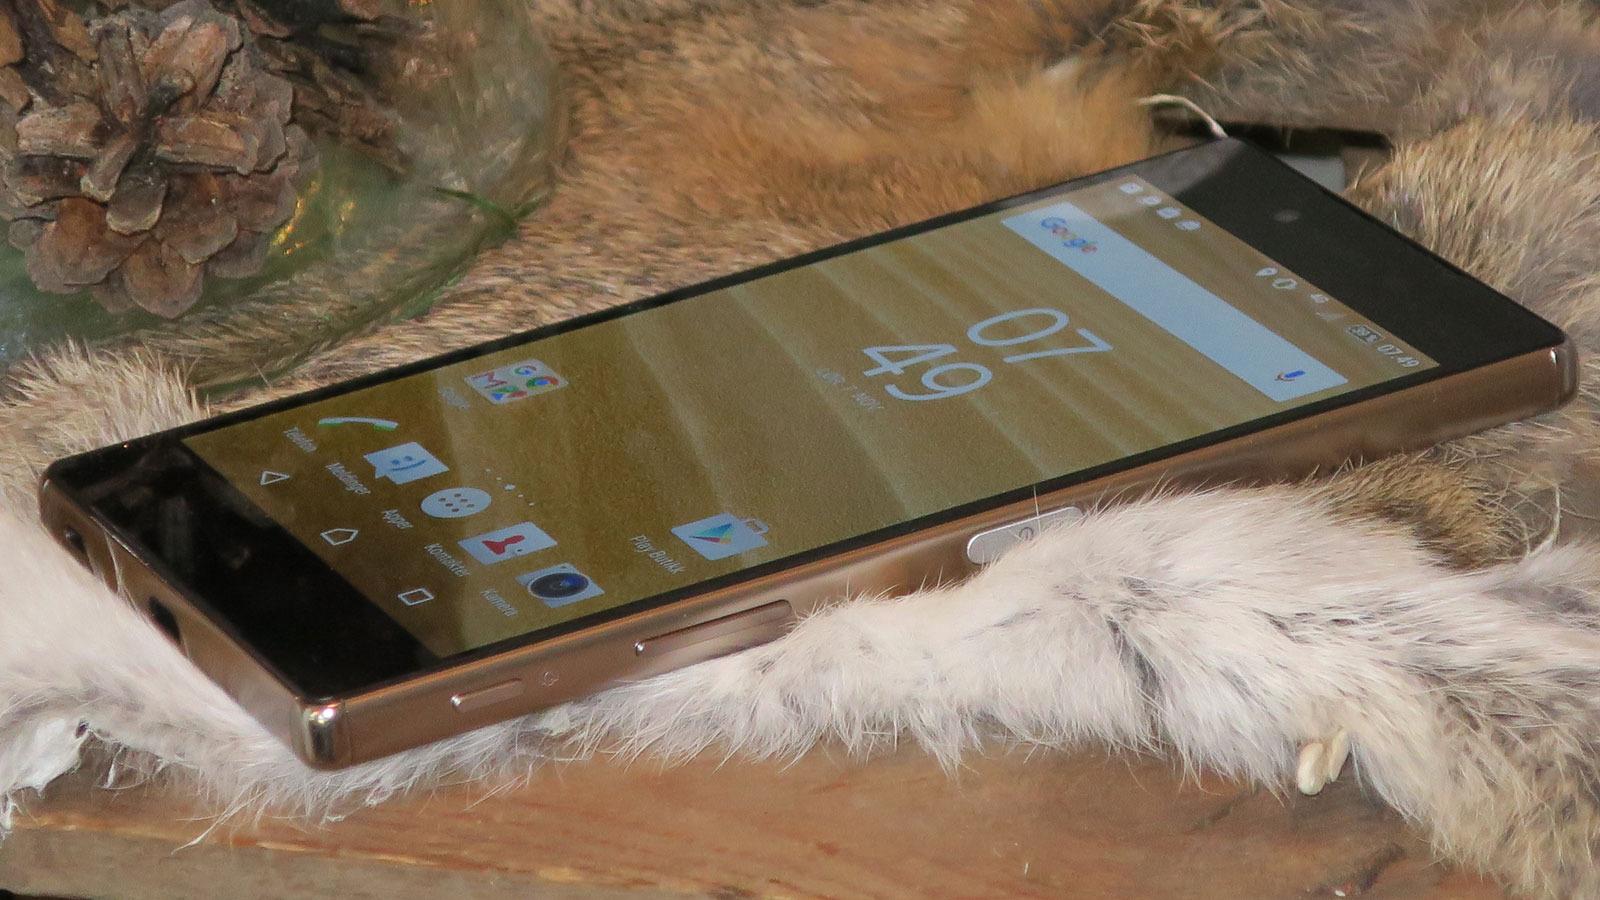 Sony Xperia Z5 Premium er blant de ytterst få mobilene hittil som har 4K-oppløsning.